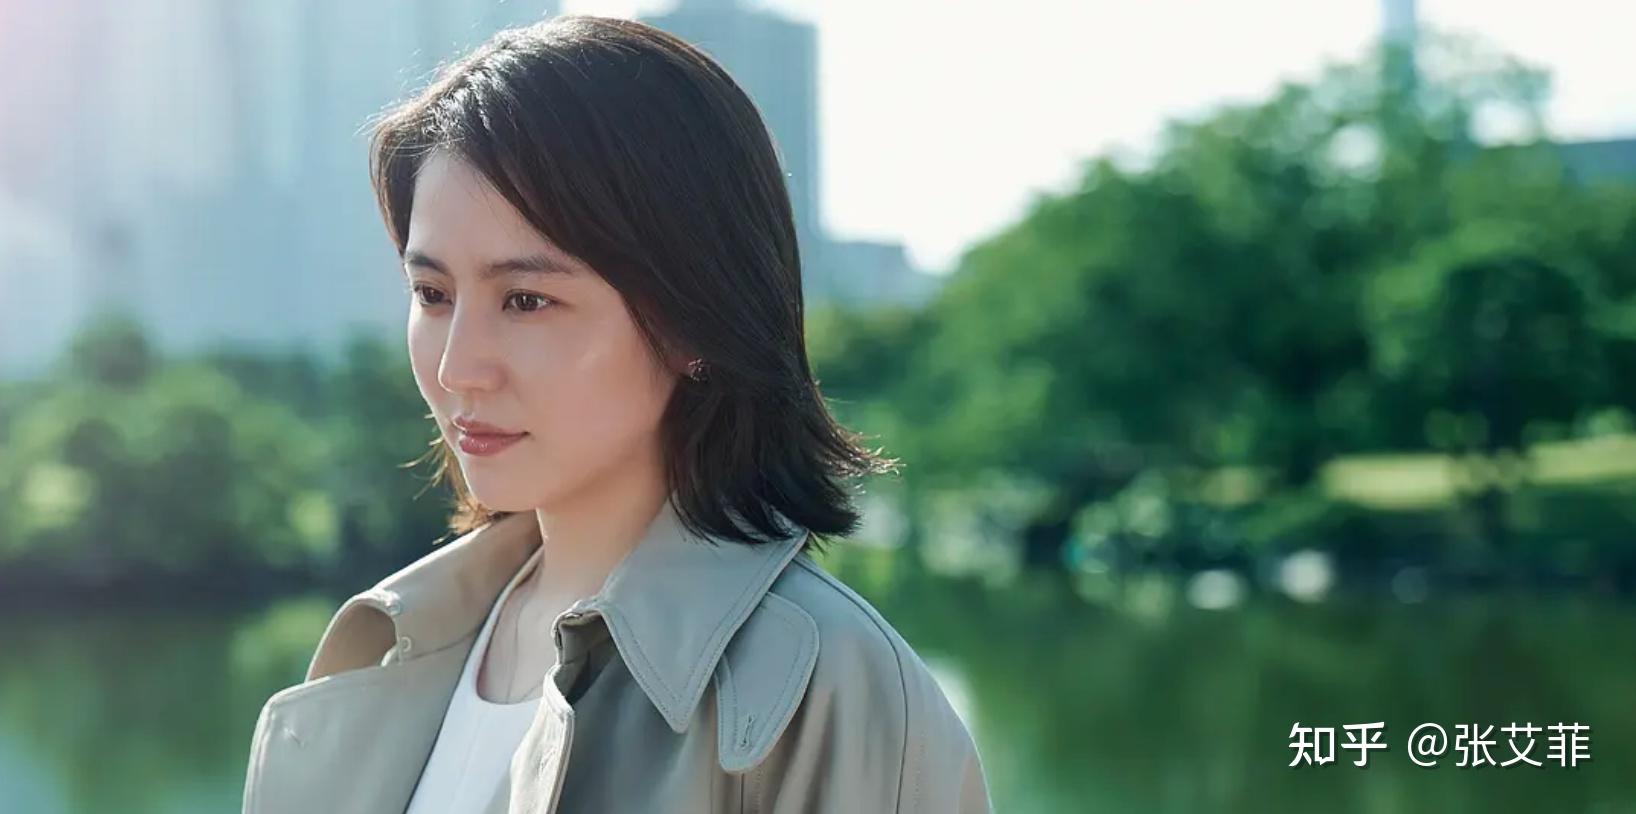 长泽雅美在《唐探3》里面饰演小林杏奈,目测是一位警察,剧中是宝强哥